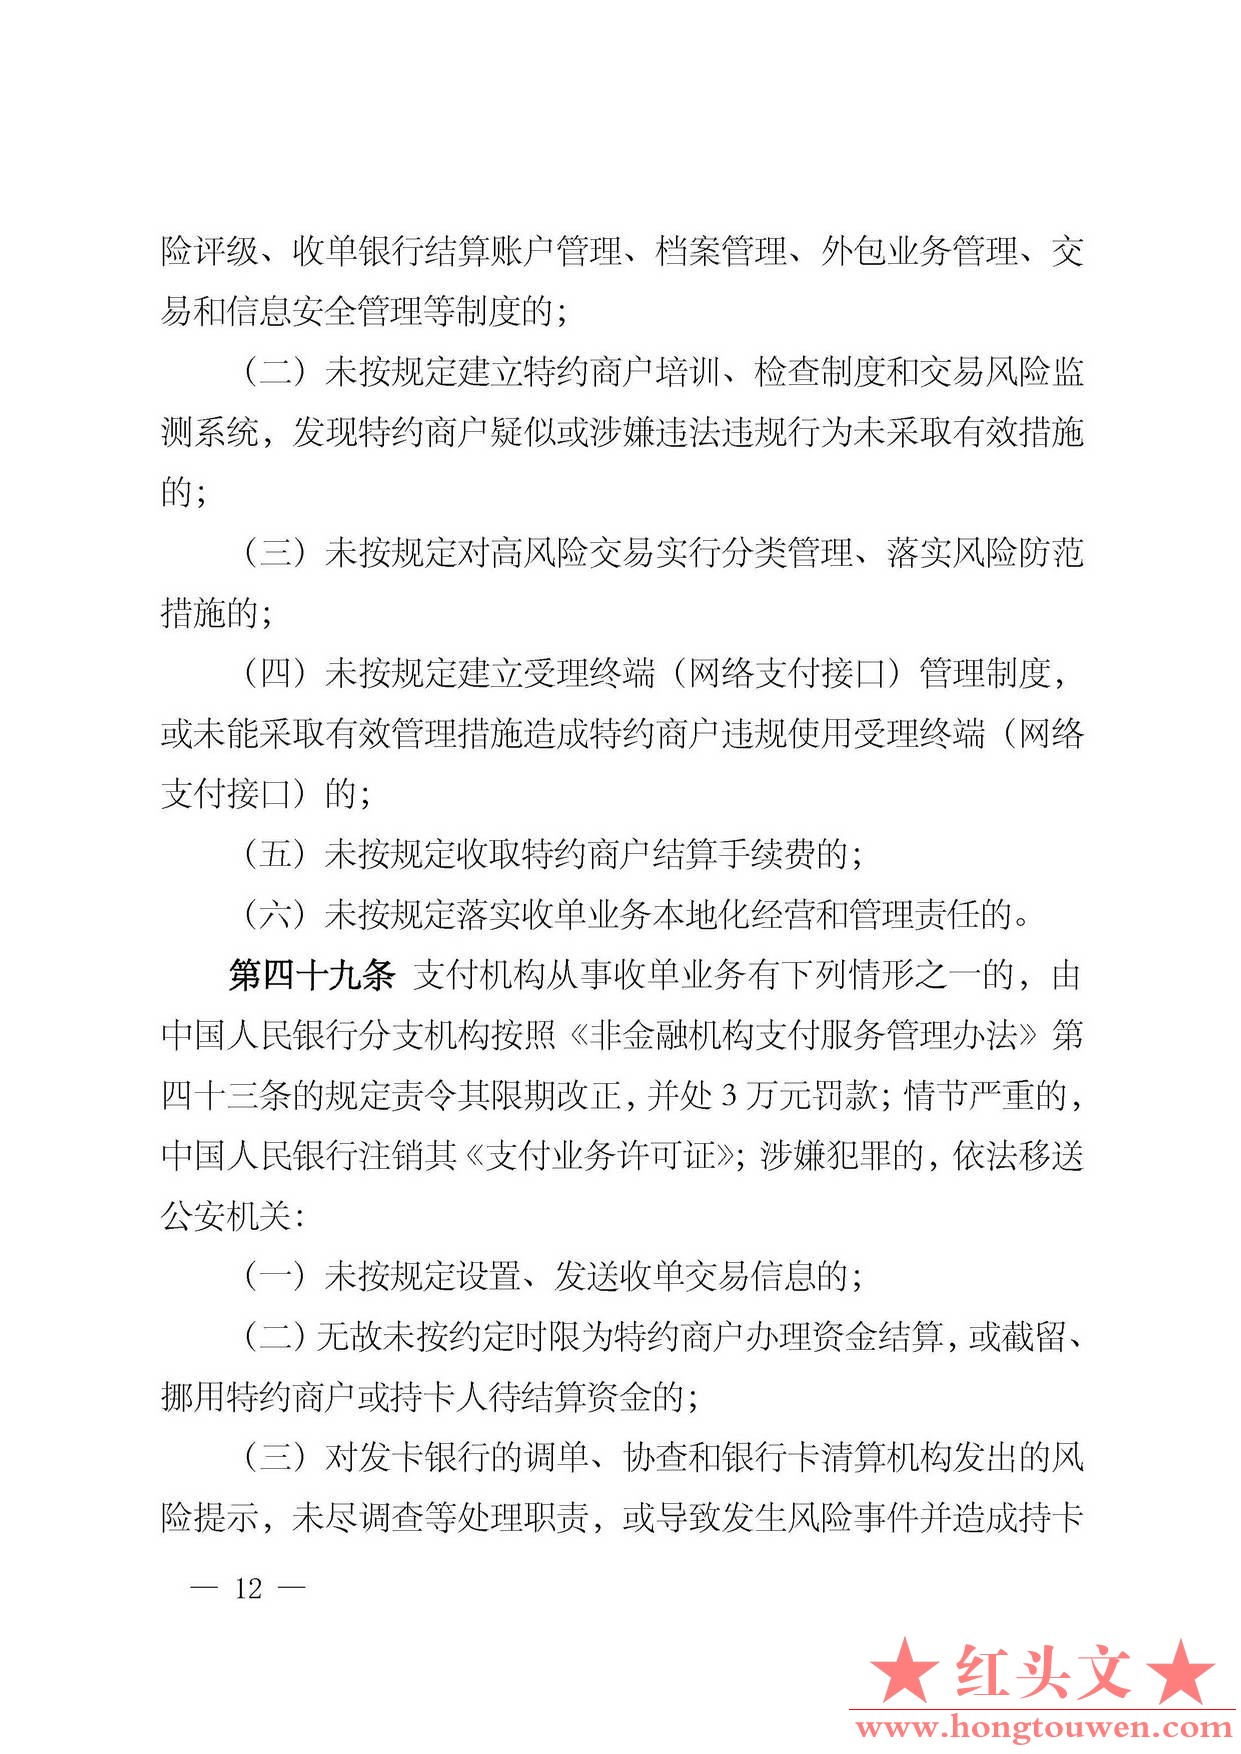 中国人民银行公告[2013]第9号-银行卡收单业务管理办法_页面_12.jpg